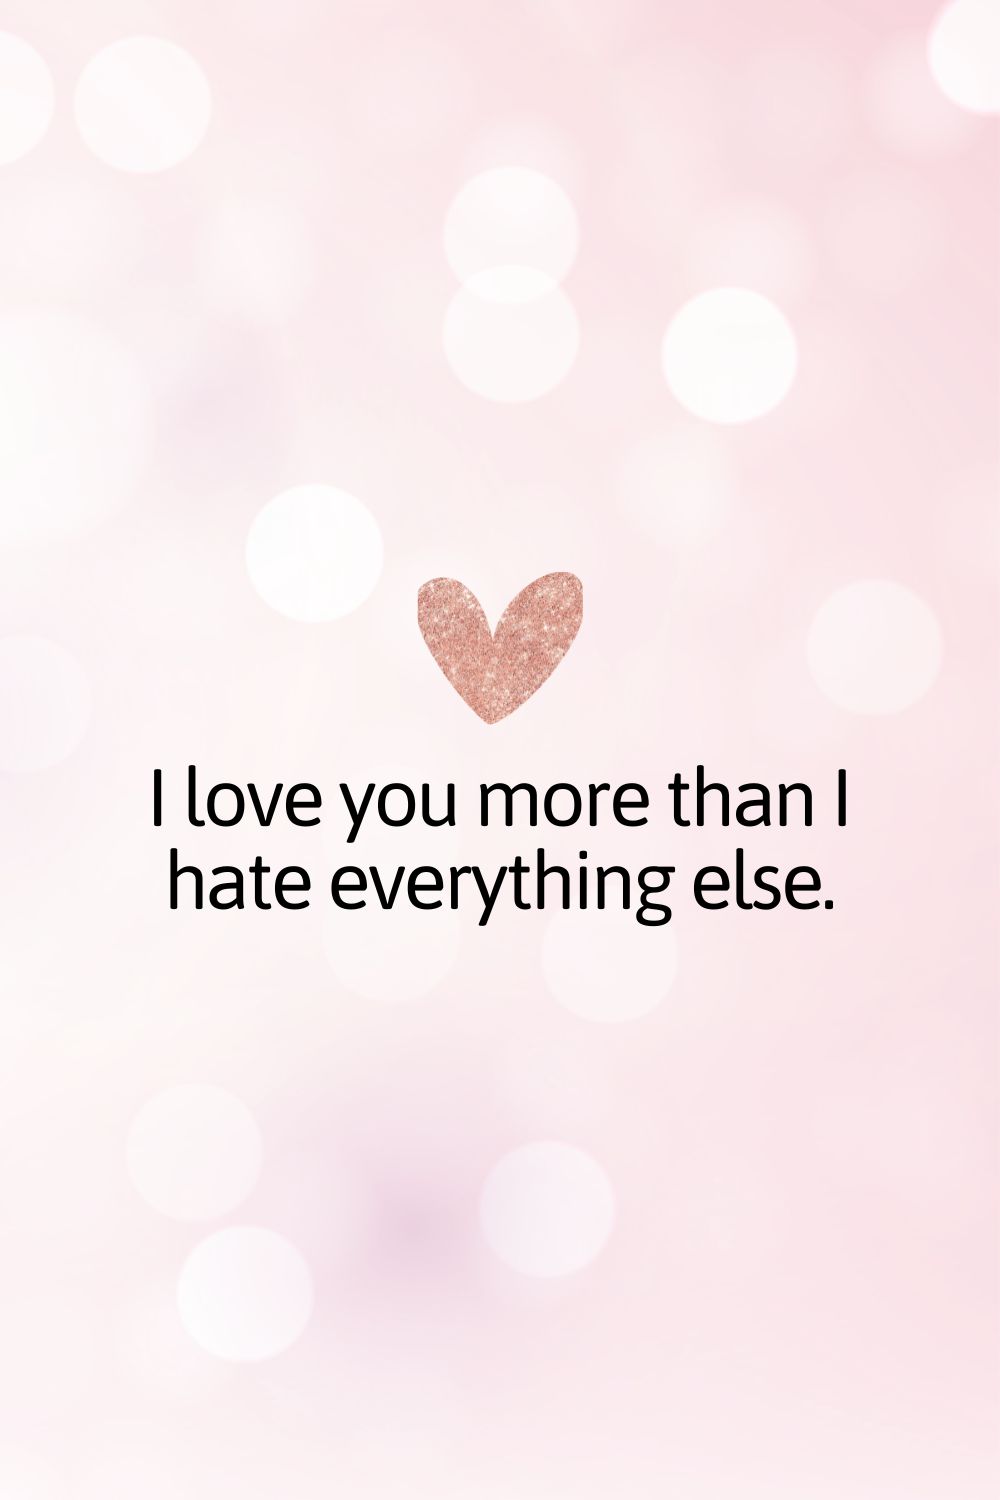 Te quiero más de lo que odio todo lo demás